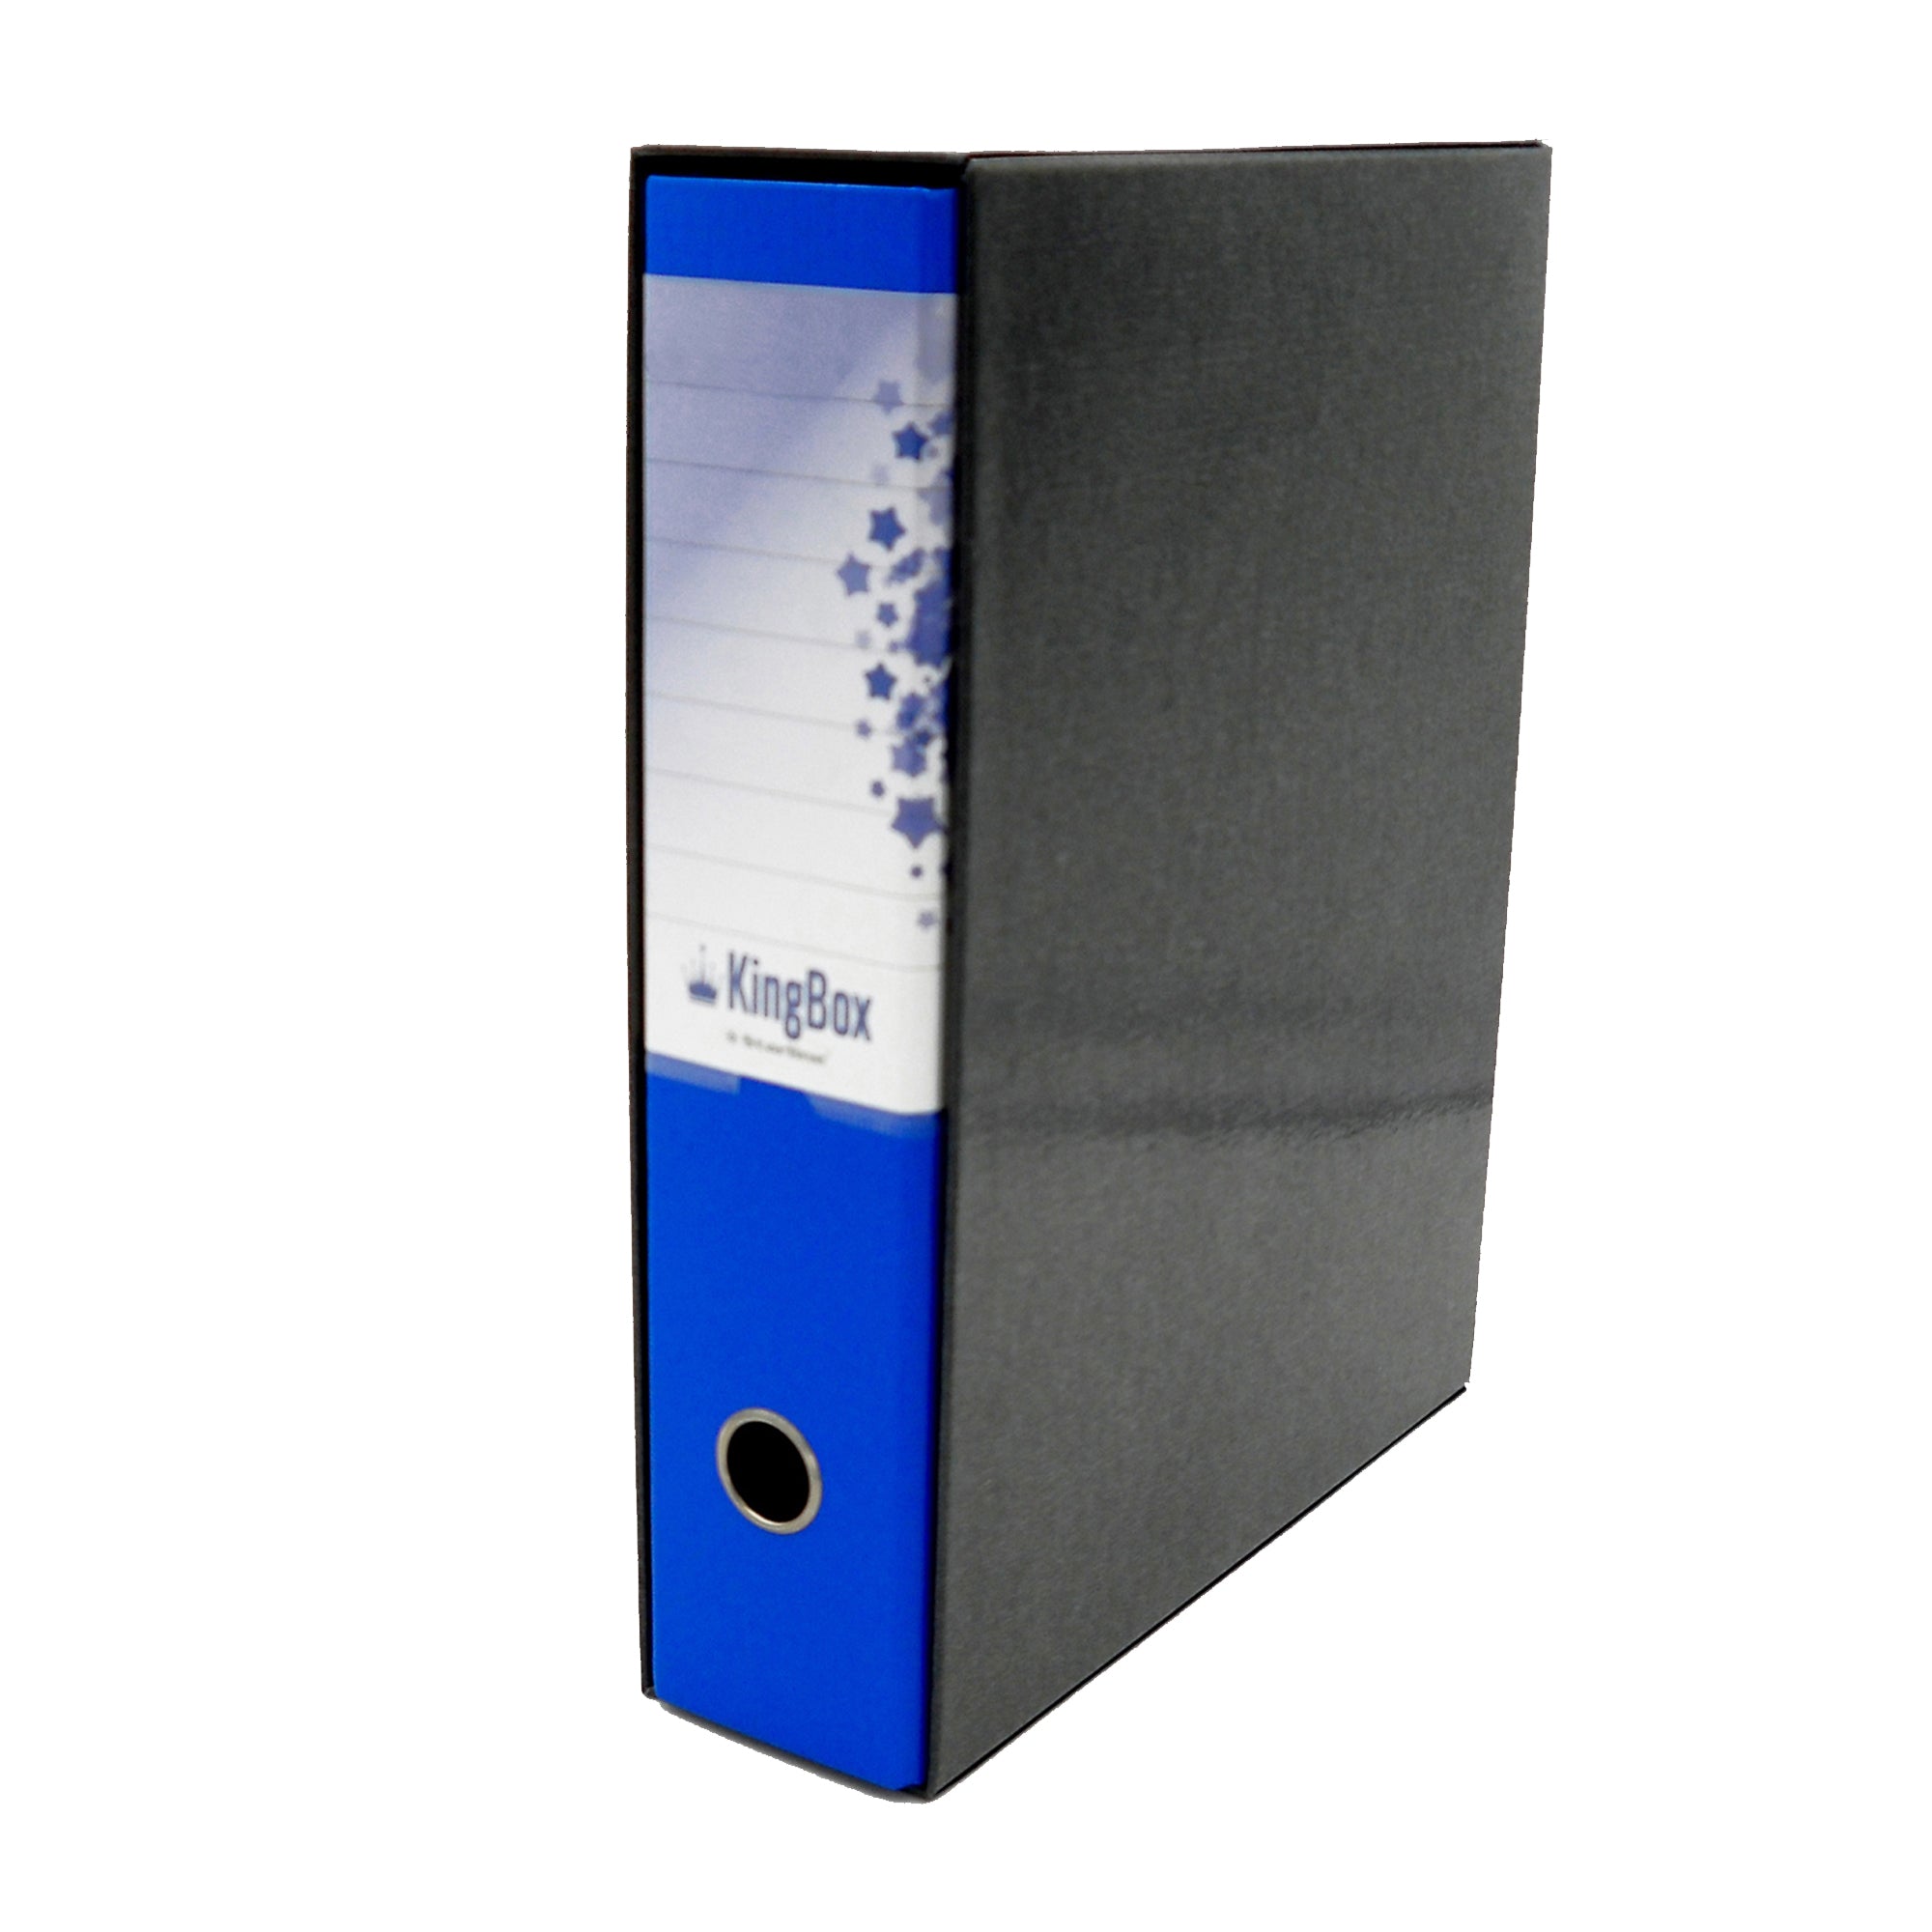 starline-registratore-kingbox-f-to-protocollo-dorso-8cm-blu